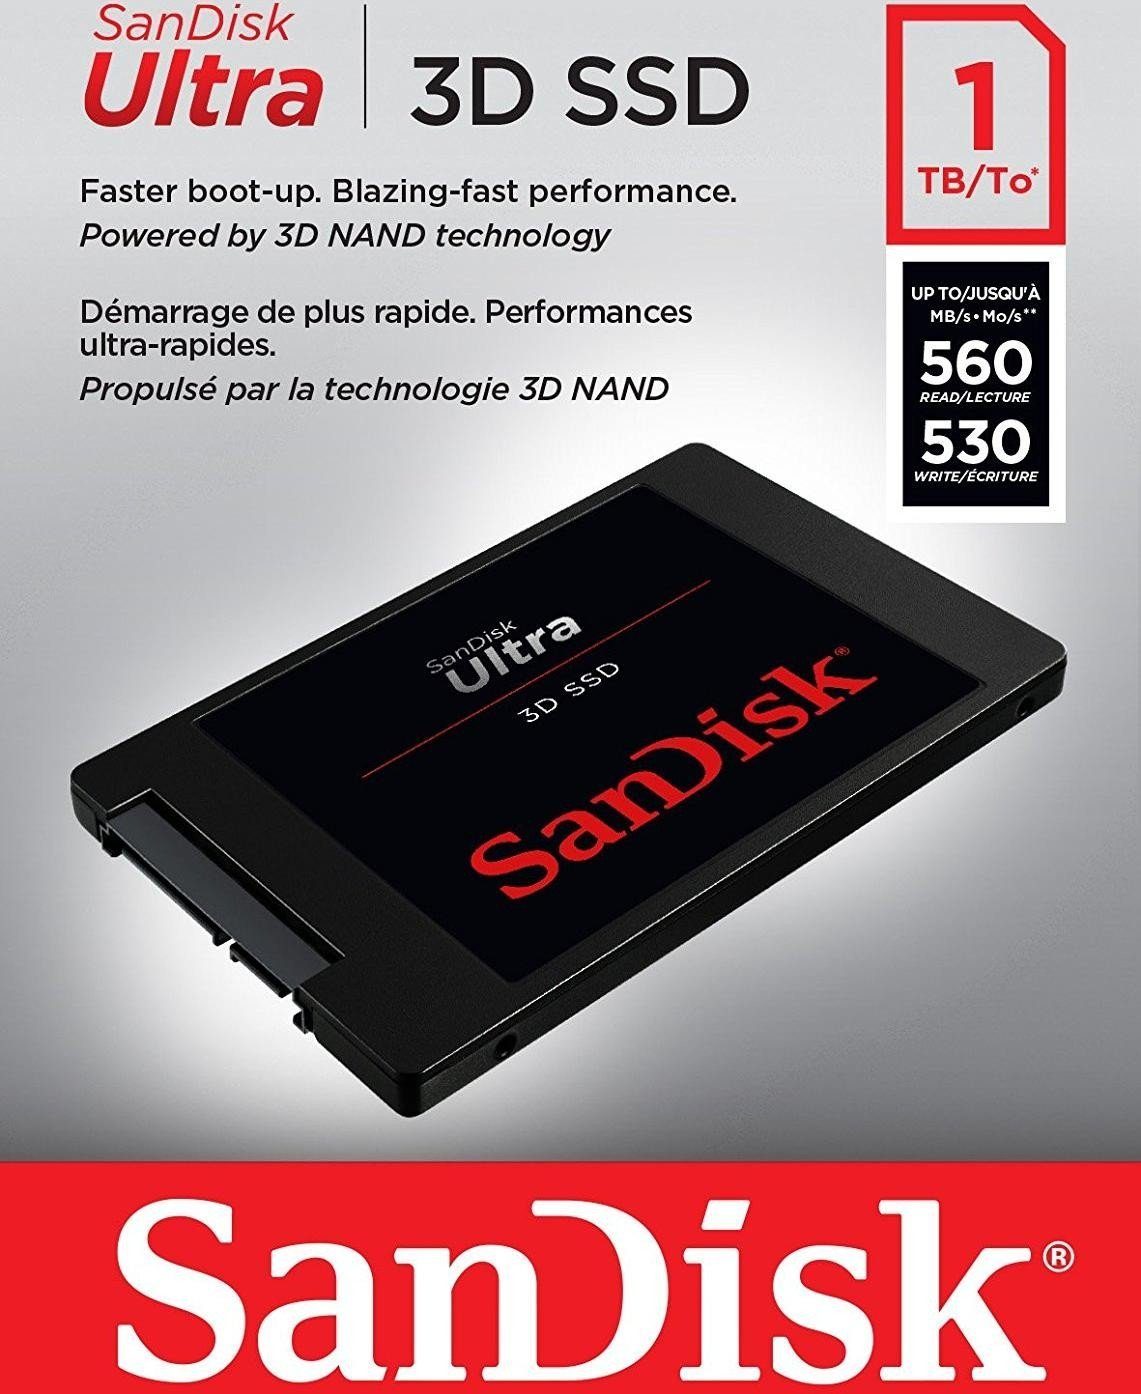 Sandisk Ultra 3D SSD 2,5"" SSD (1TB) MB/S Lesegeschwindigkeit, 560 530 interne Schreibgeschwindigkeit MB/S